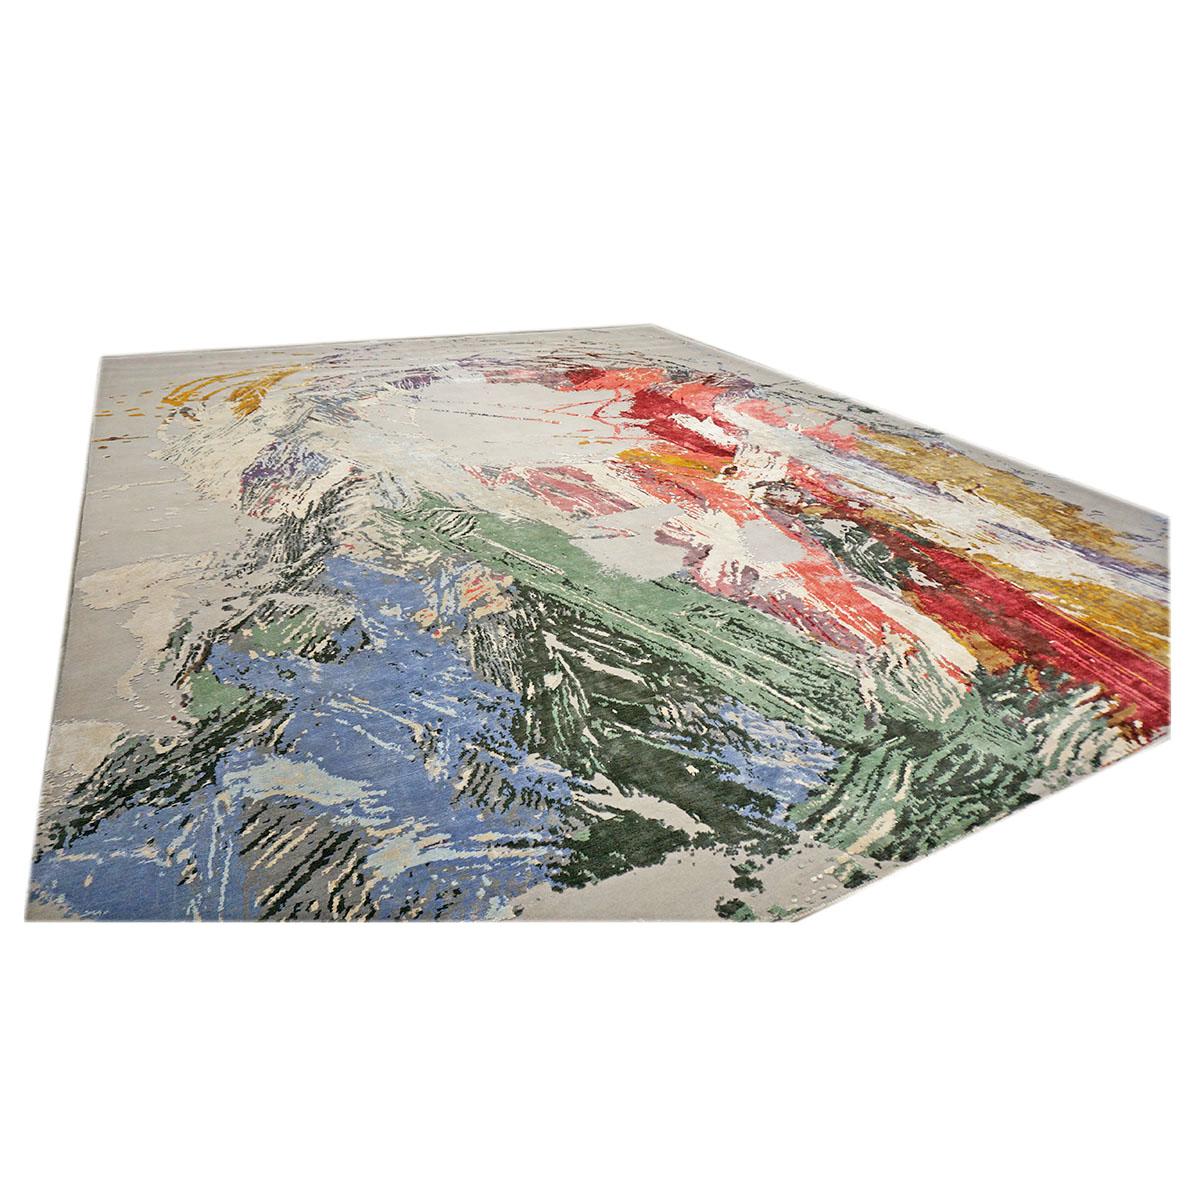 Ashly Fine Rugs présente un nouveau tapis d'inspiration moderne en laine et soie 12x15 gris et multicolore fait à la main avec des fibres brillantes et un poil épais et durable. Cette magnifique collection a été conçue par notre designer interne et